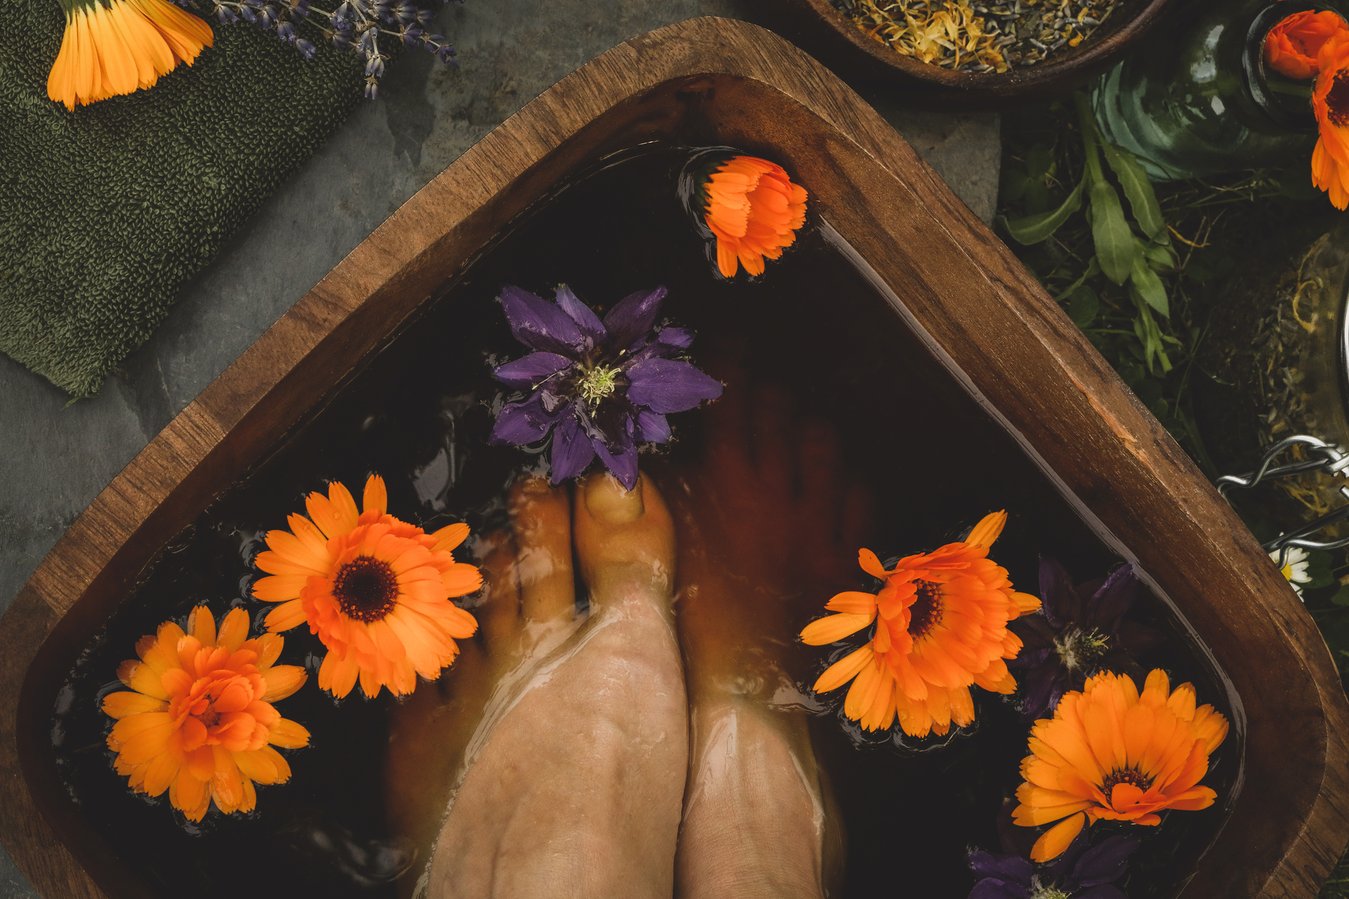 Feet soaking in herbal soak with orange and purple flowers